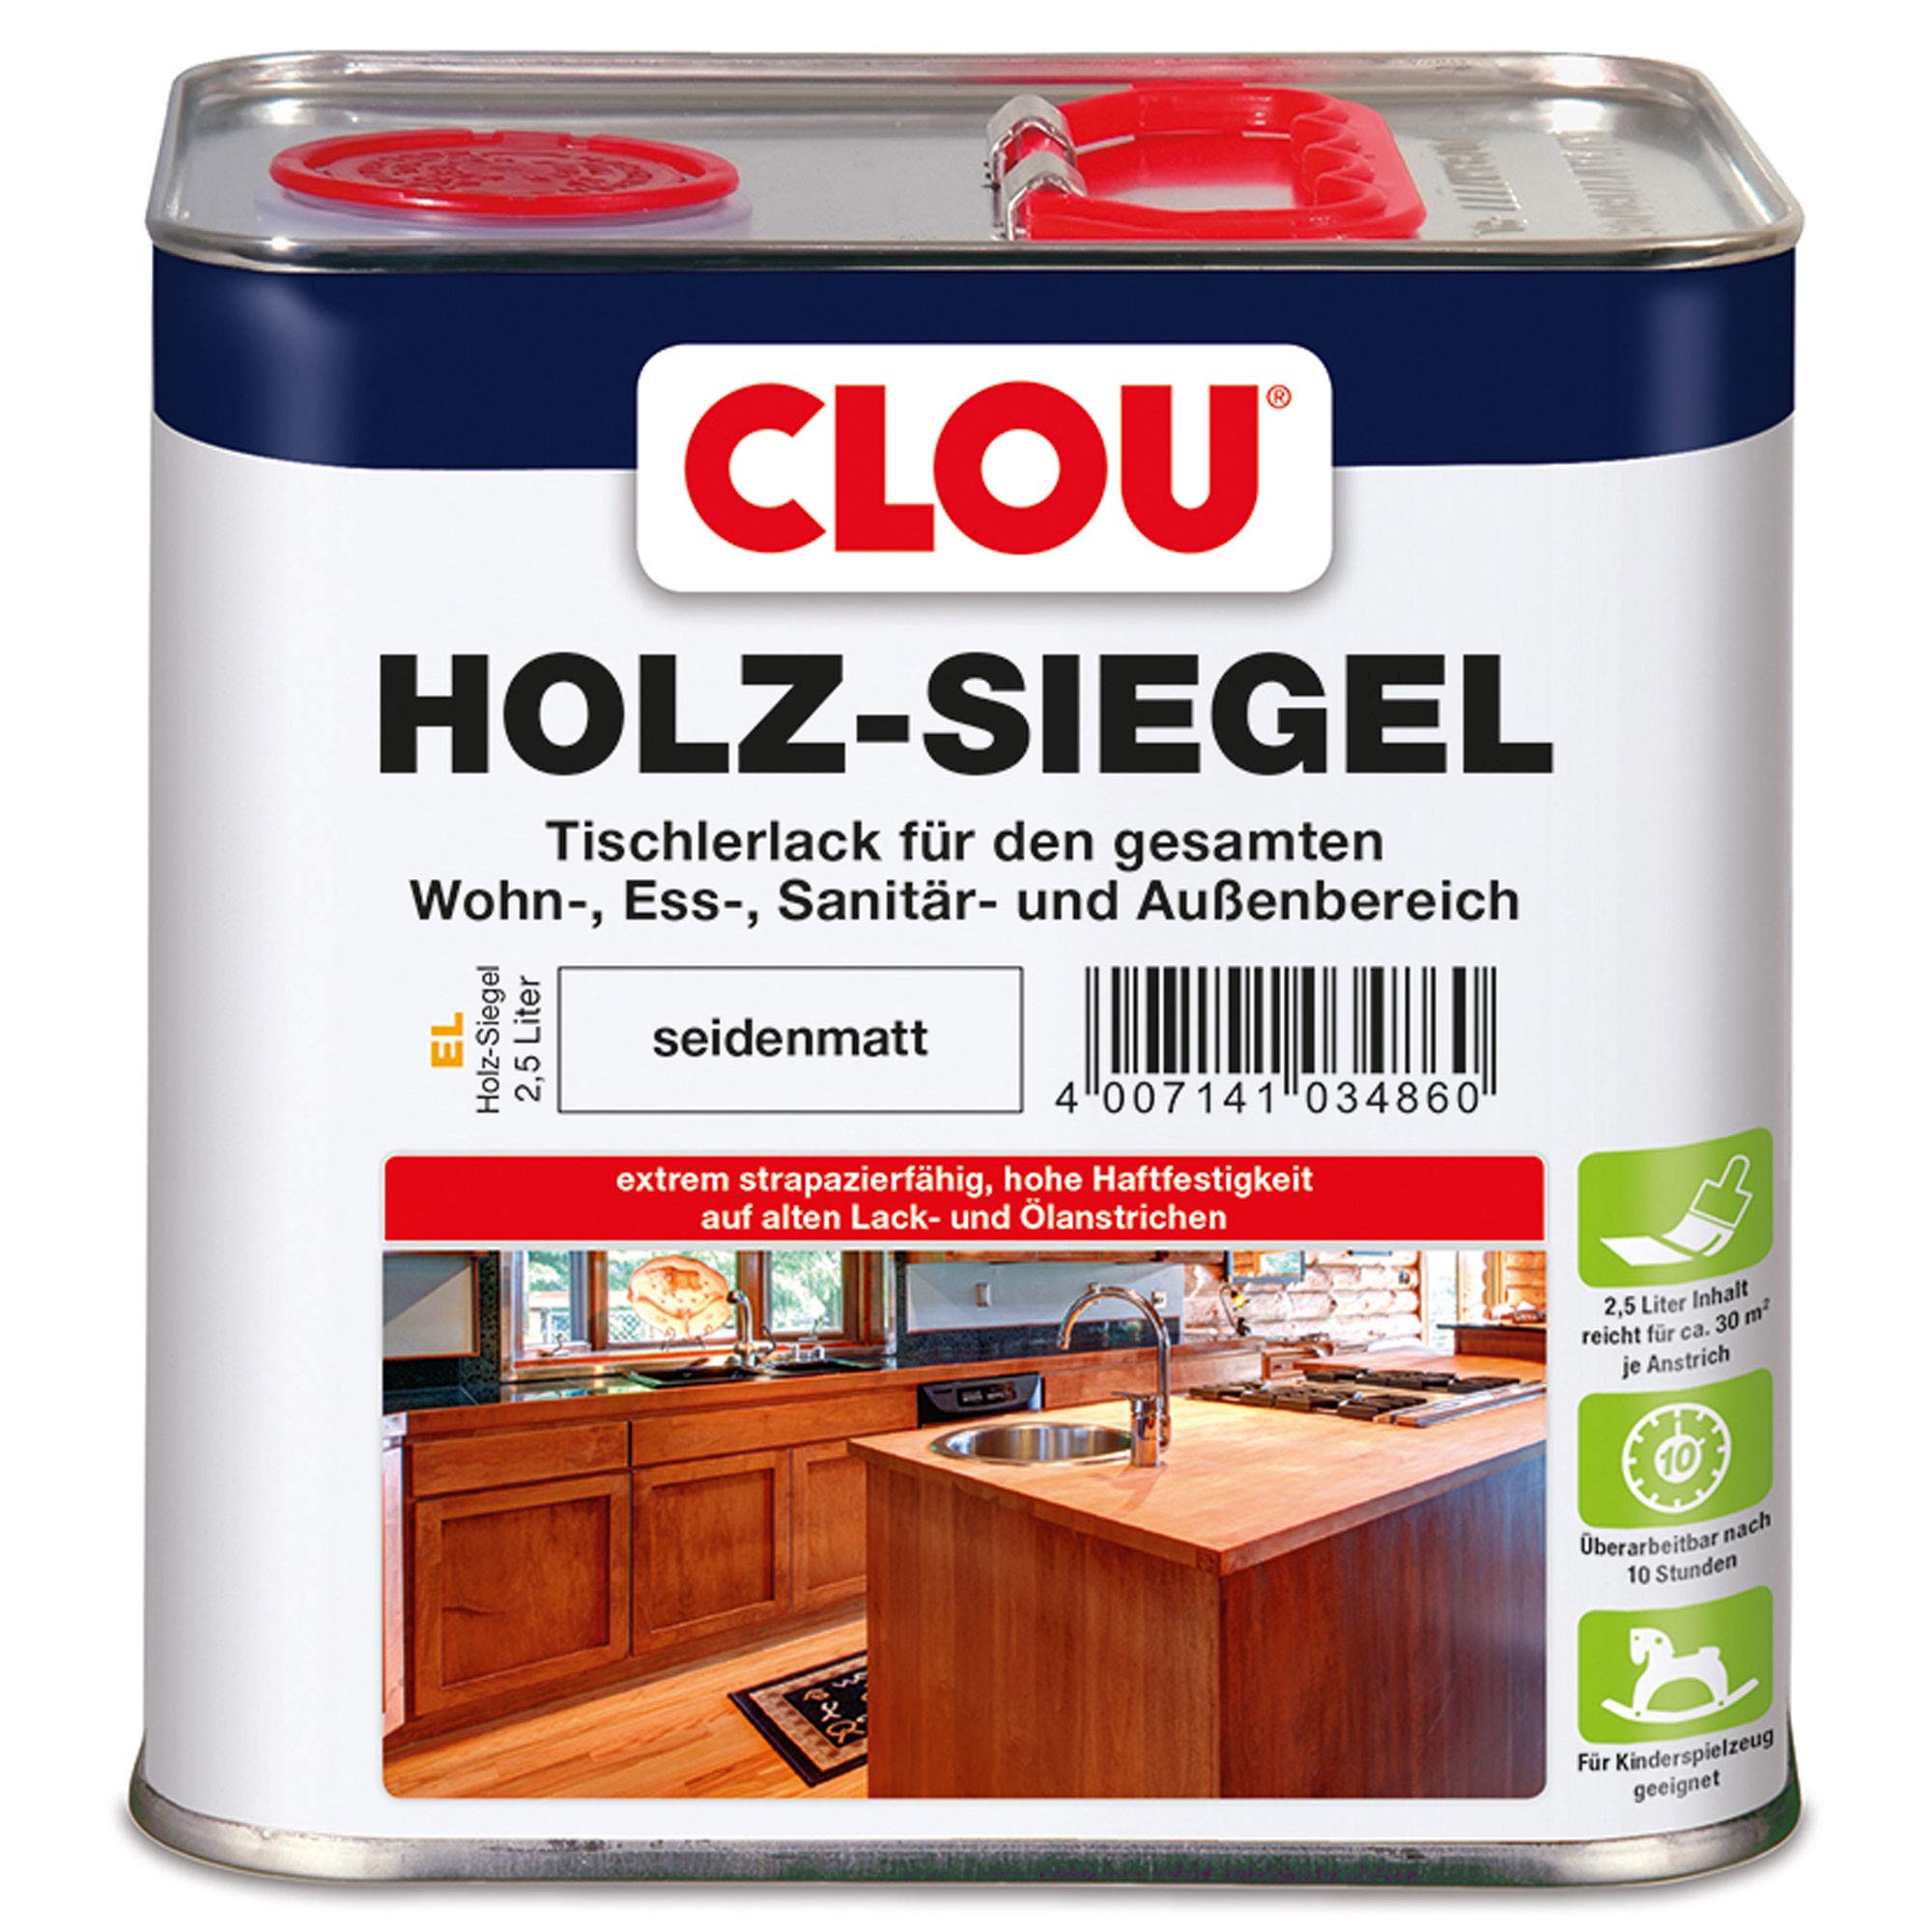 CLOU Holz-Siegel Tischlerlack: Premium Klarlack zur Lackierung von Möbeln, Treppen, Parkett und im Garten, seidenmatt, 2,50 L